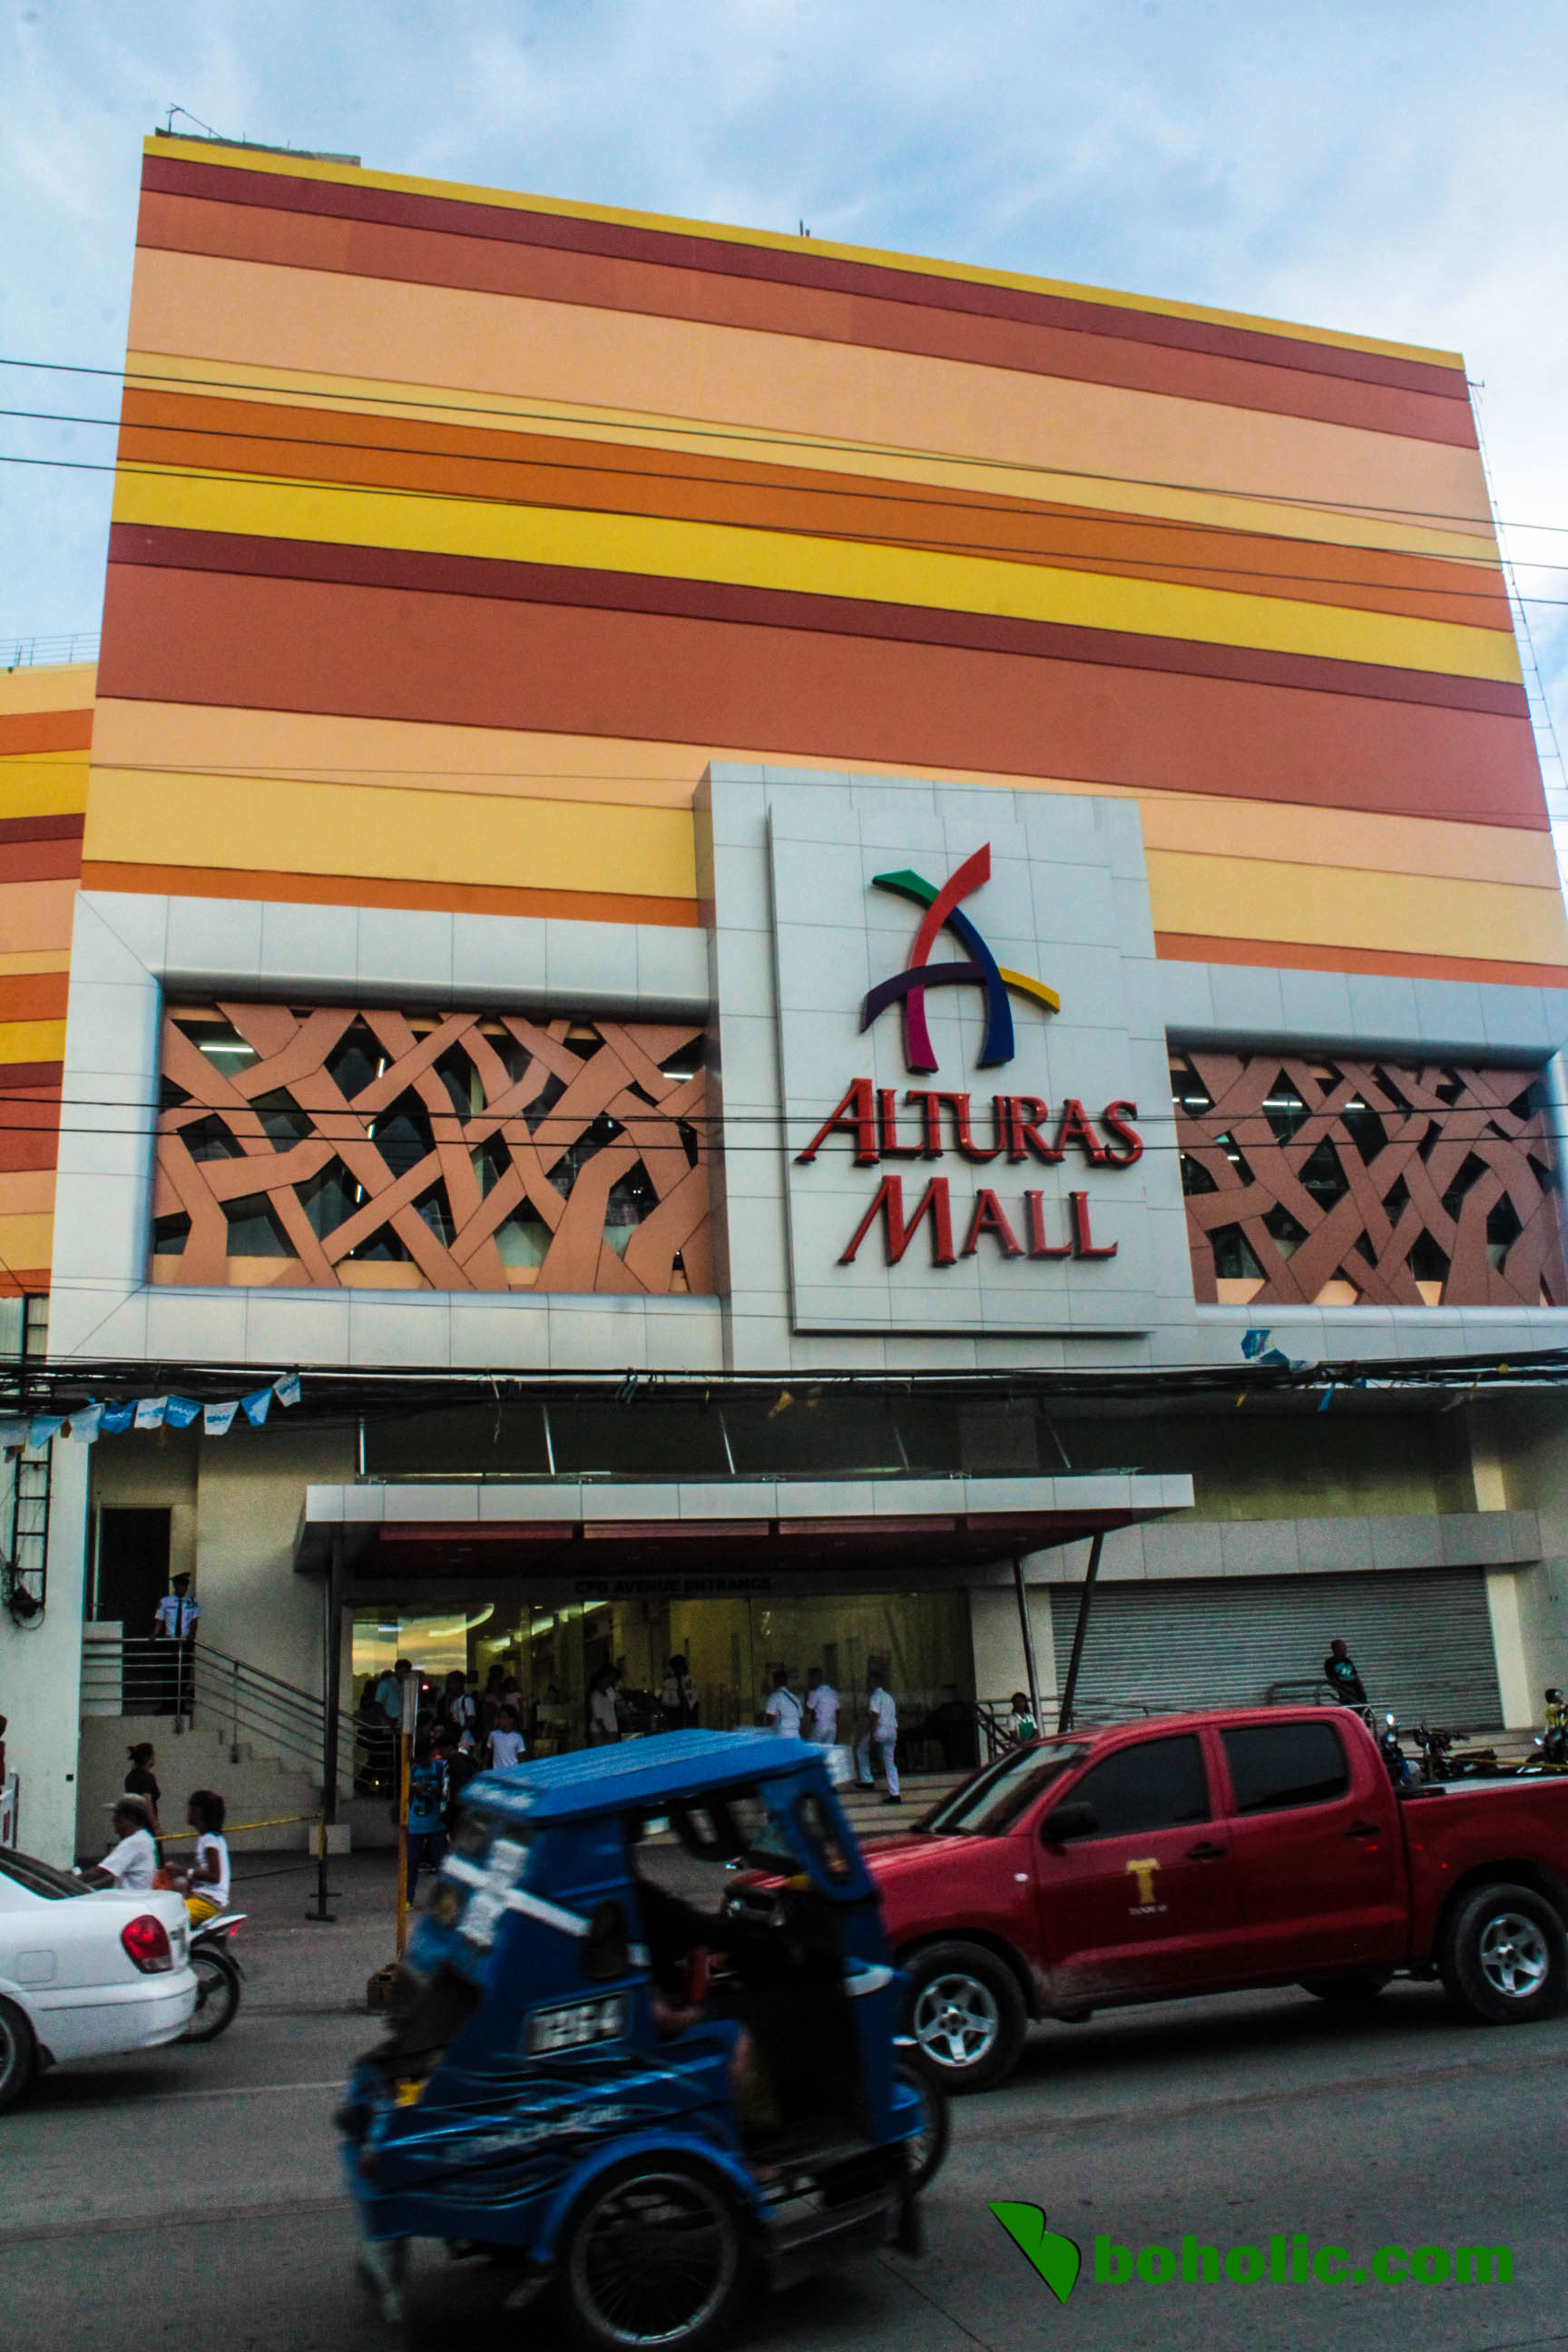 Alturas Mall